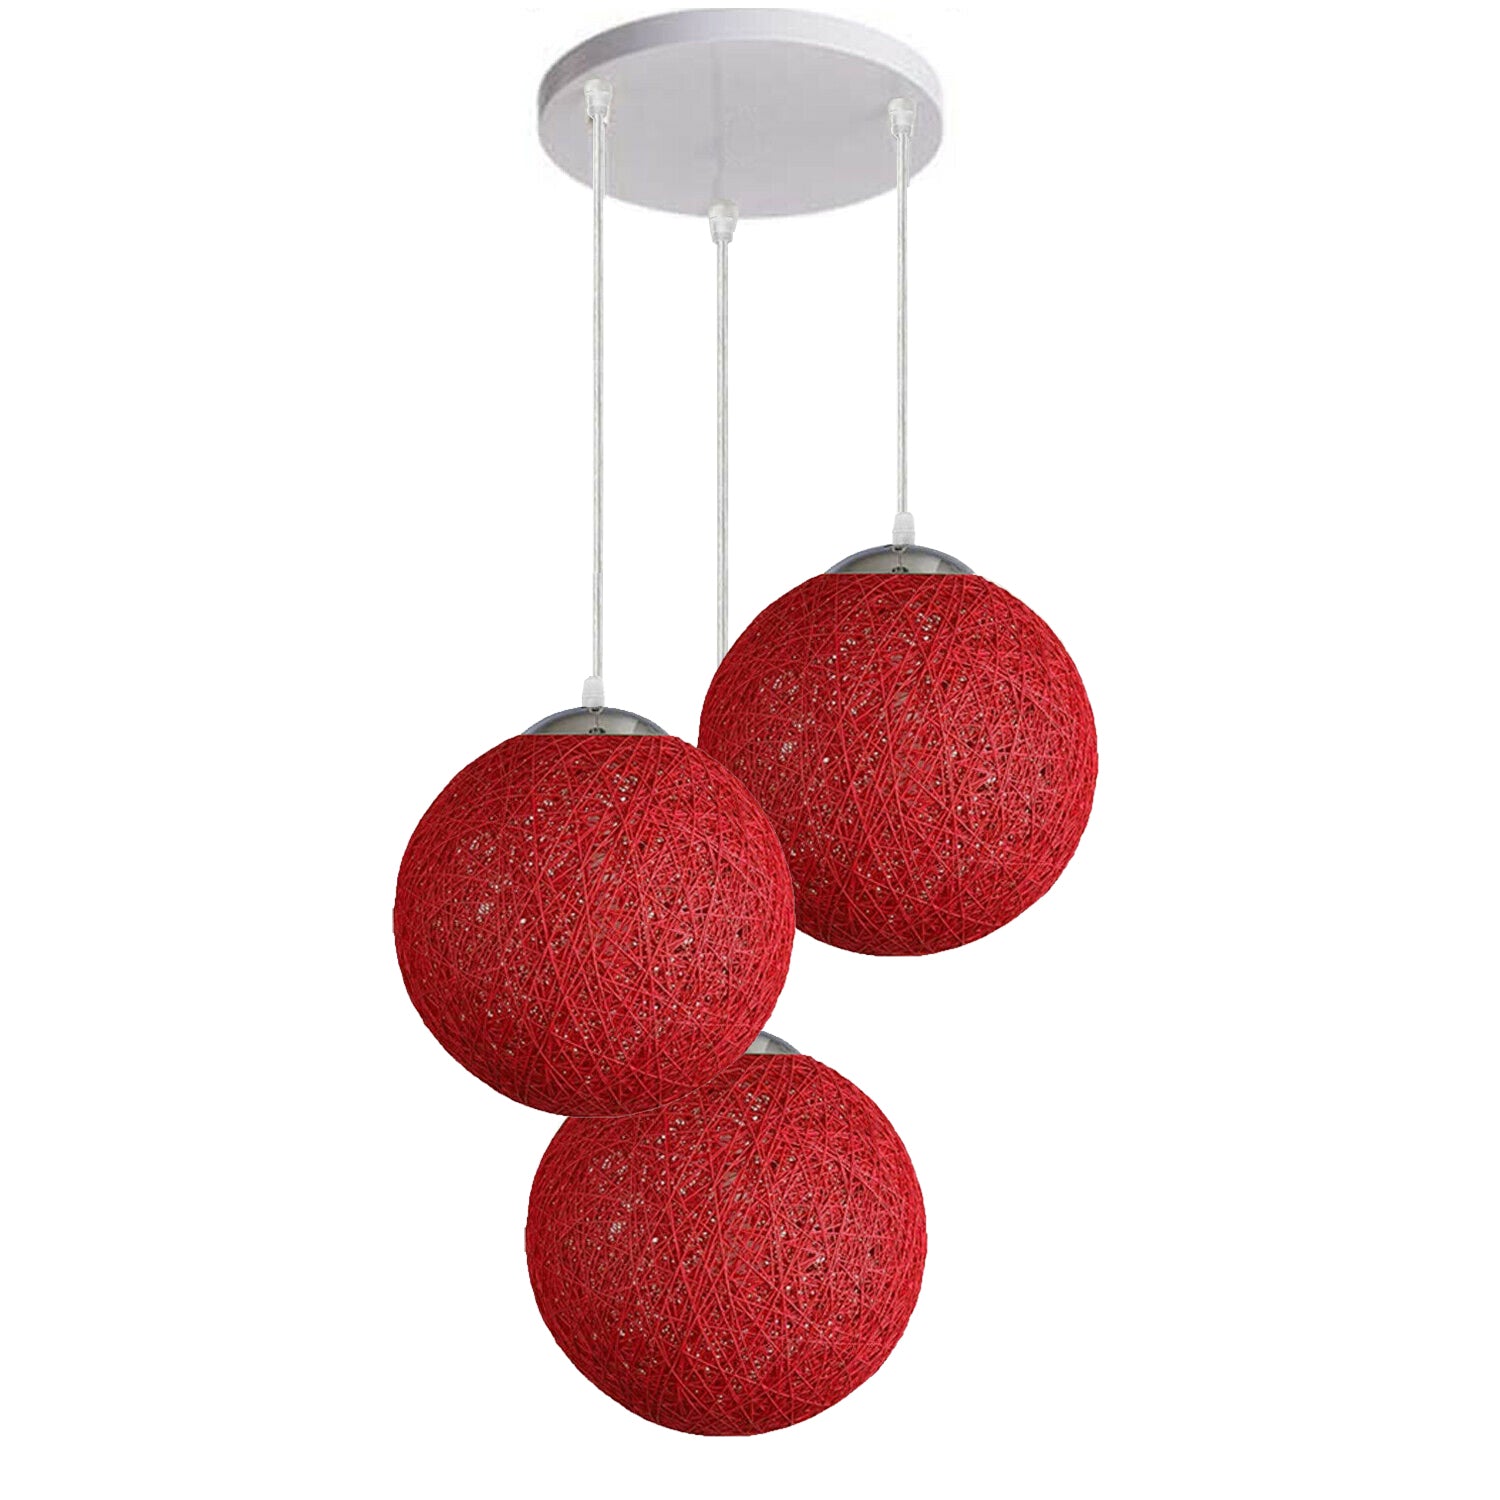 Red Vine Ball Rattan Shade Chandelier Three Head Dekorative Round Base Deckenpendelleuchte